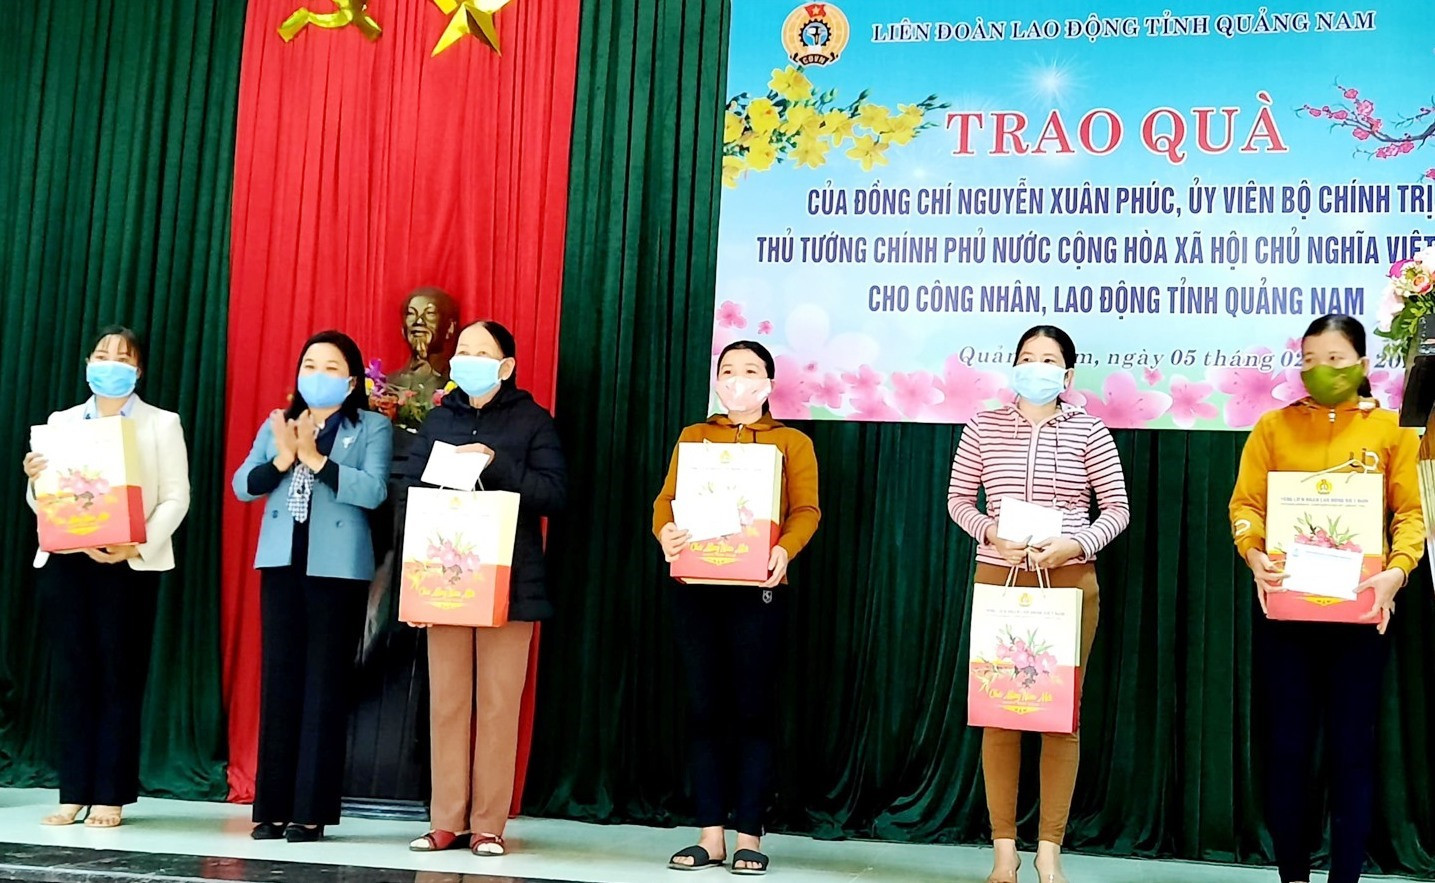 Công nhân lao động khó khăn tại Núi Thành được nhận quà do Thủ tướng Chính phủ Nguyễn Xuân Phúc gửi tặng. Ảnh: D.L